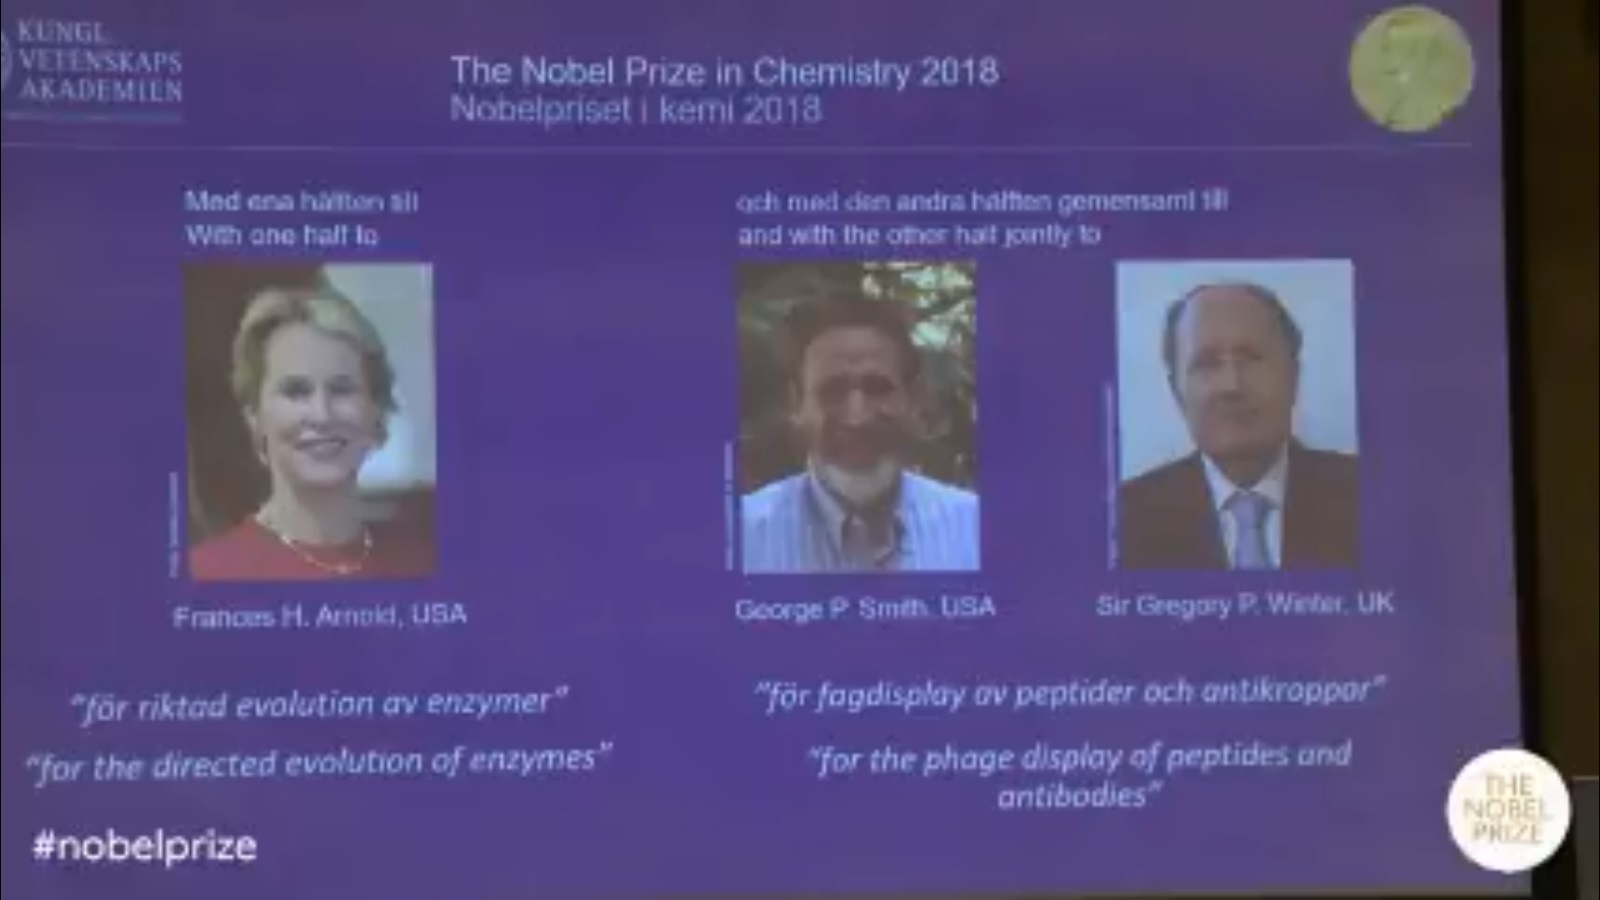 الإعلان عن الفائزين بجائزة نوبل فى الكيمياء 2018 (1)